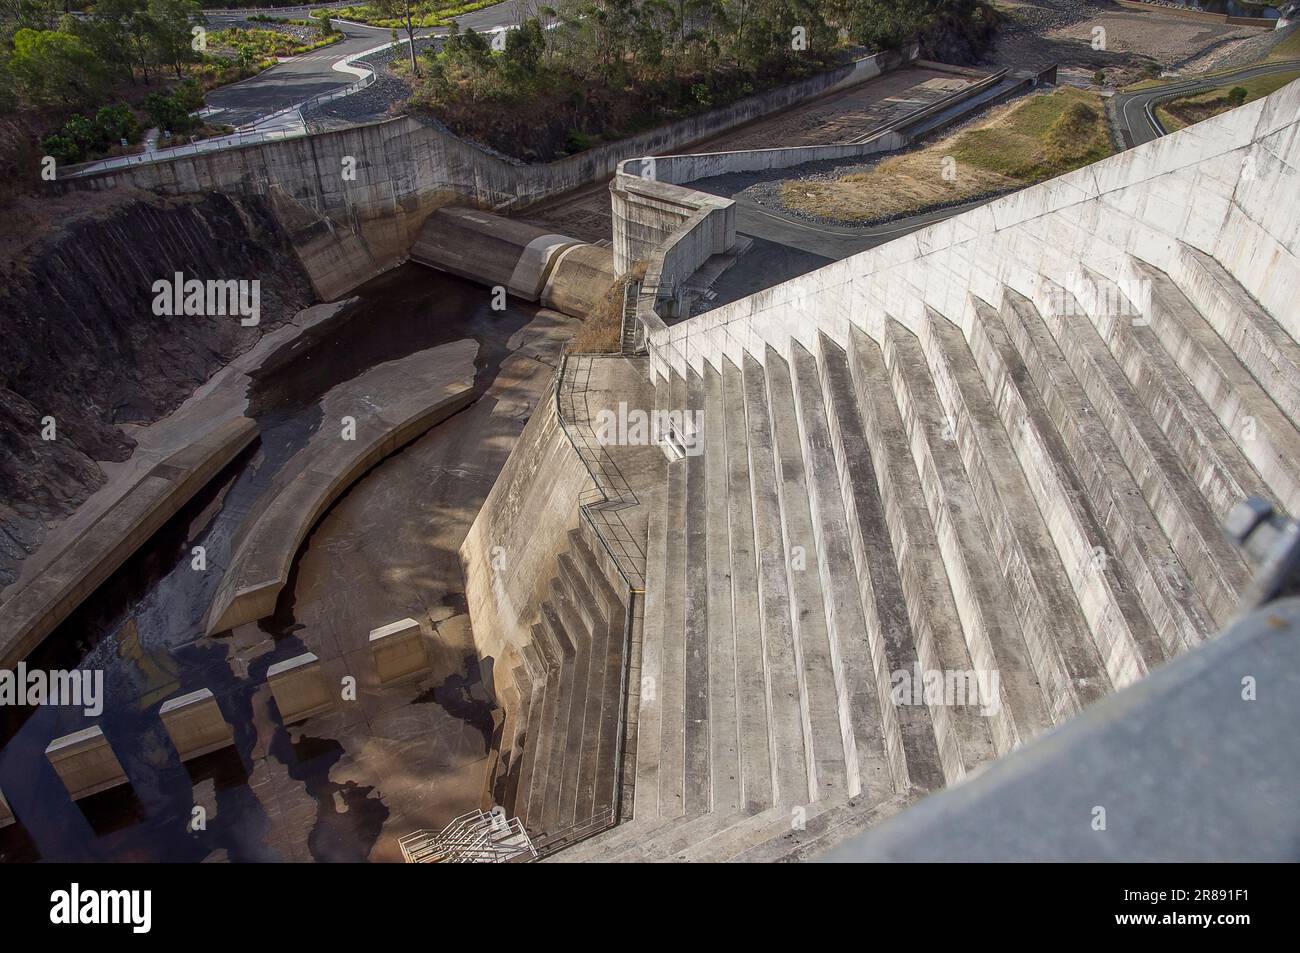 Vista desde la parte superior del vertedero escalonado de hormigón de la presa Hinze en Advancetown, SE Queensland, Australia. Ingeniería de mitigación de inundaciones, Gold Coast hinterland. Foto de stock